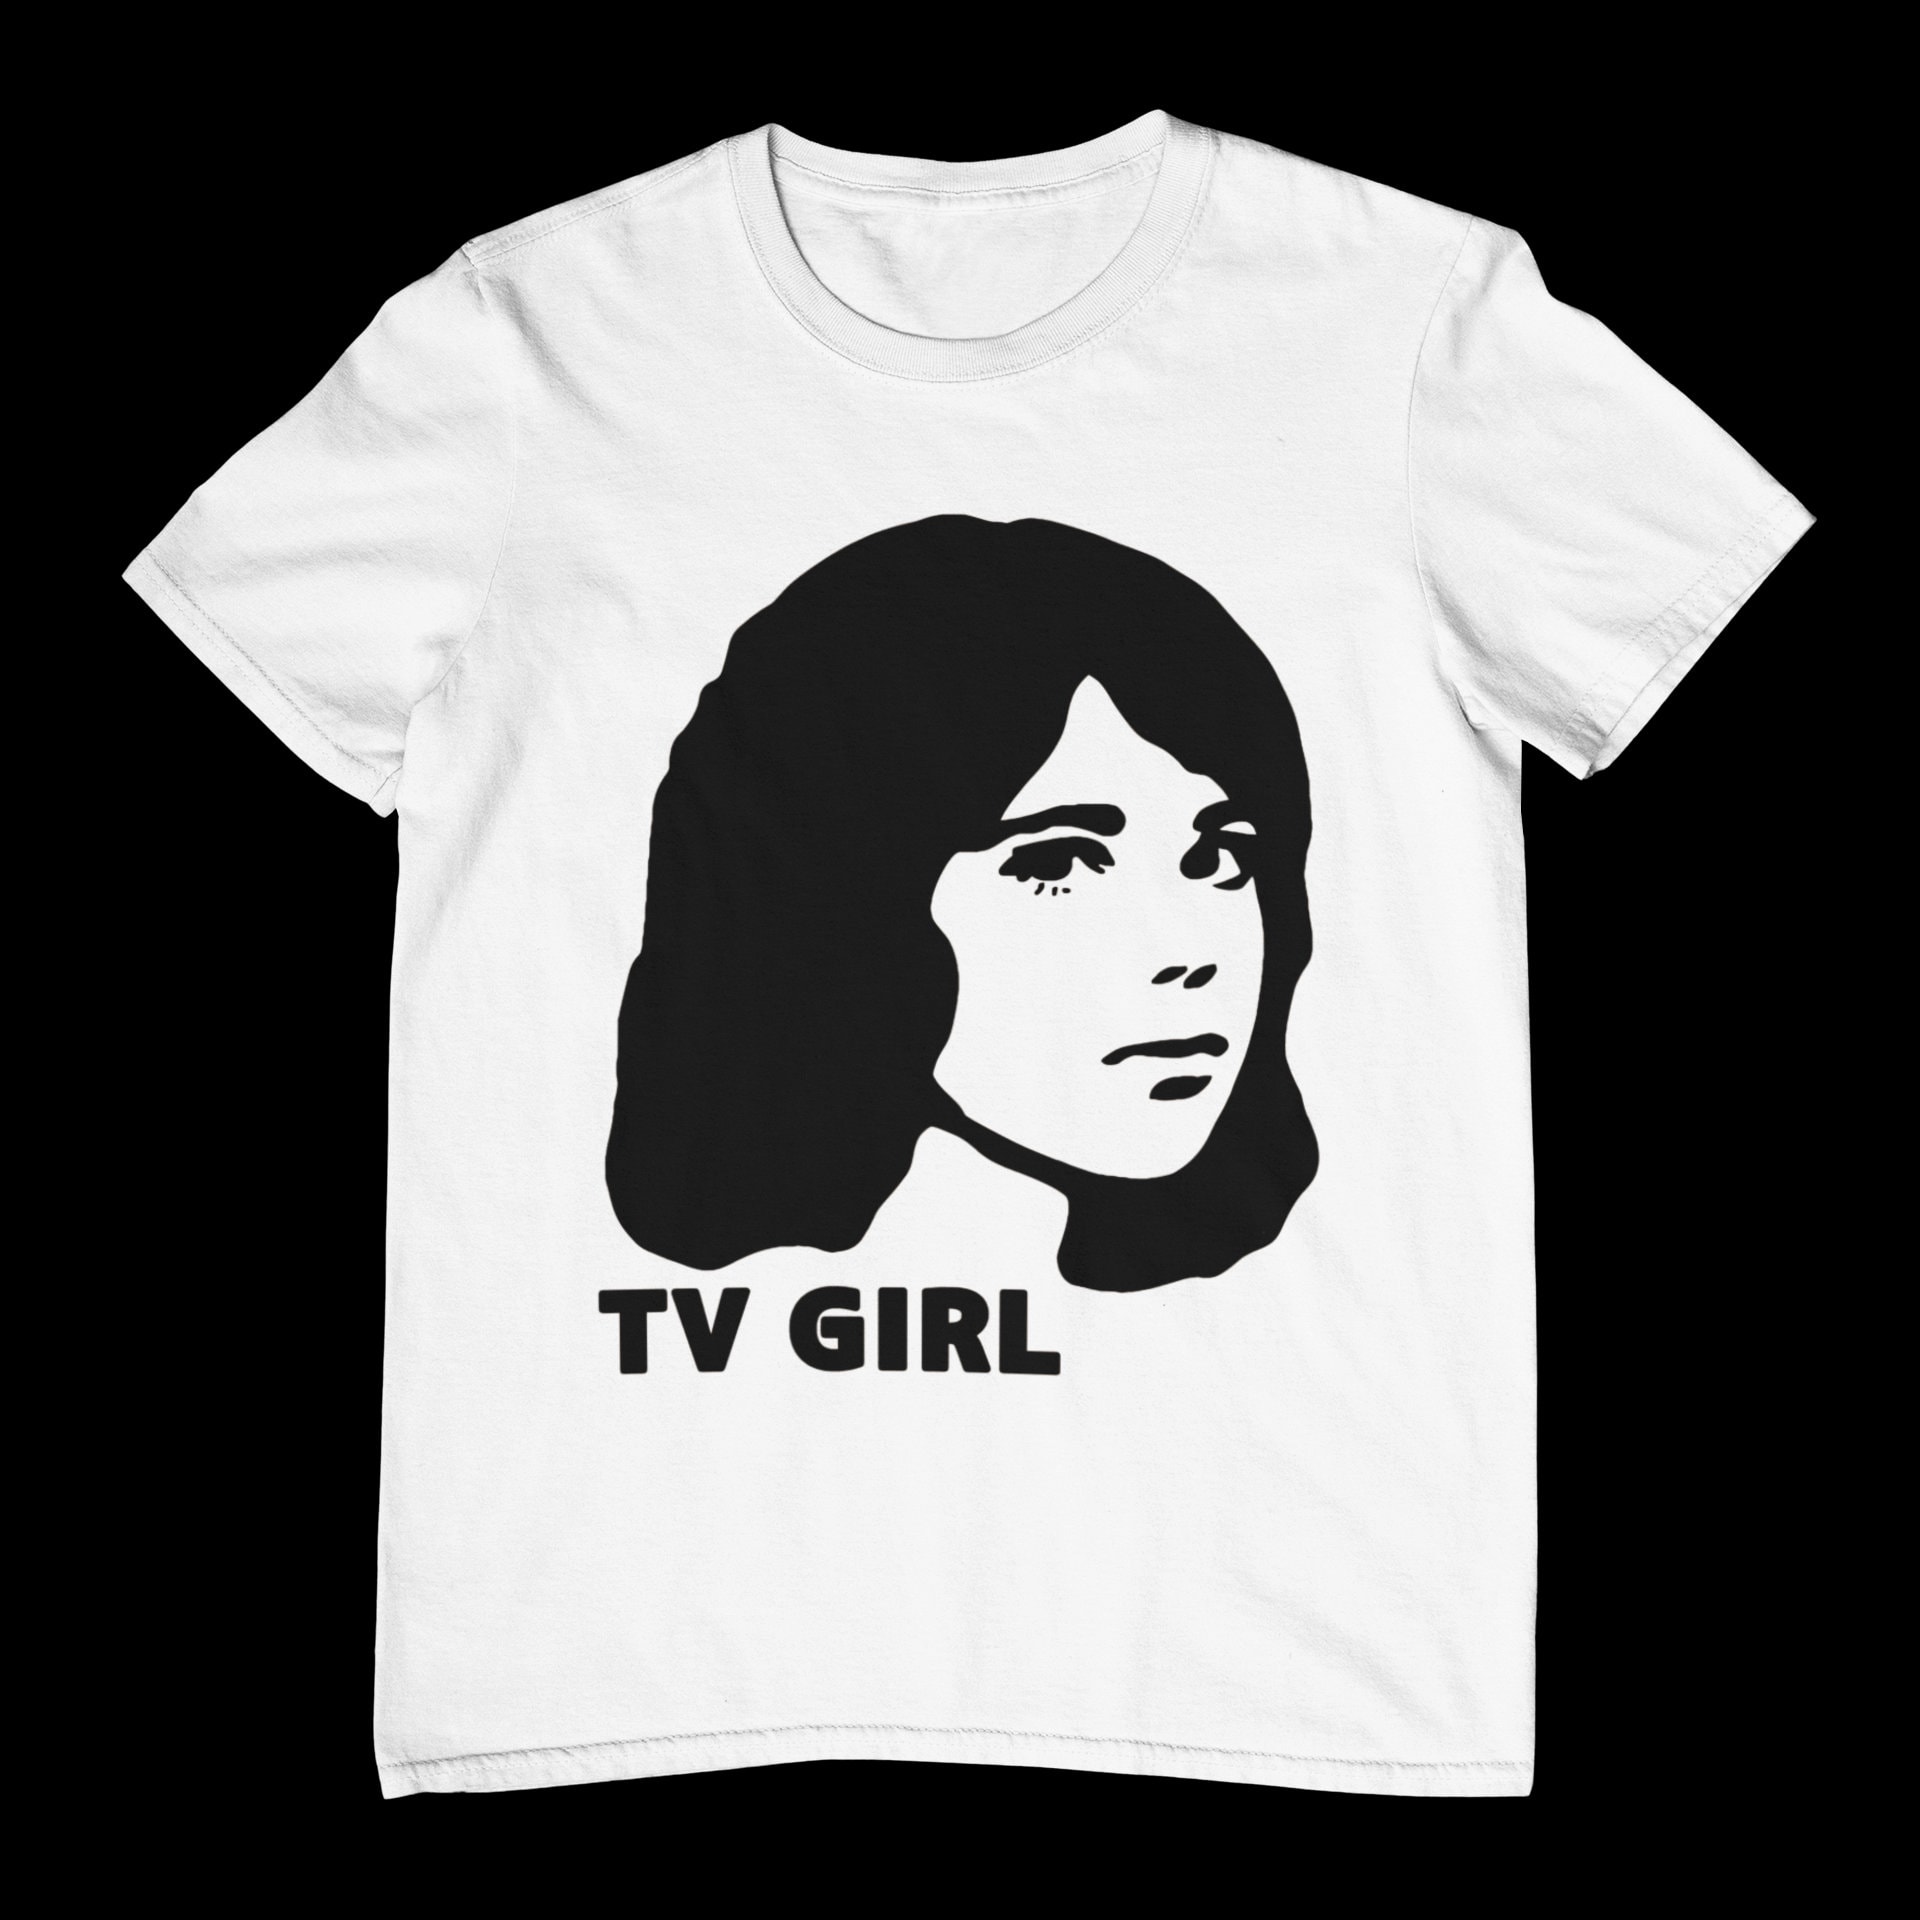 Tv Girl Shirt - Tv Girl Tee - Tv Girl Merch - Tv Girl Album